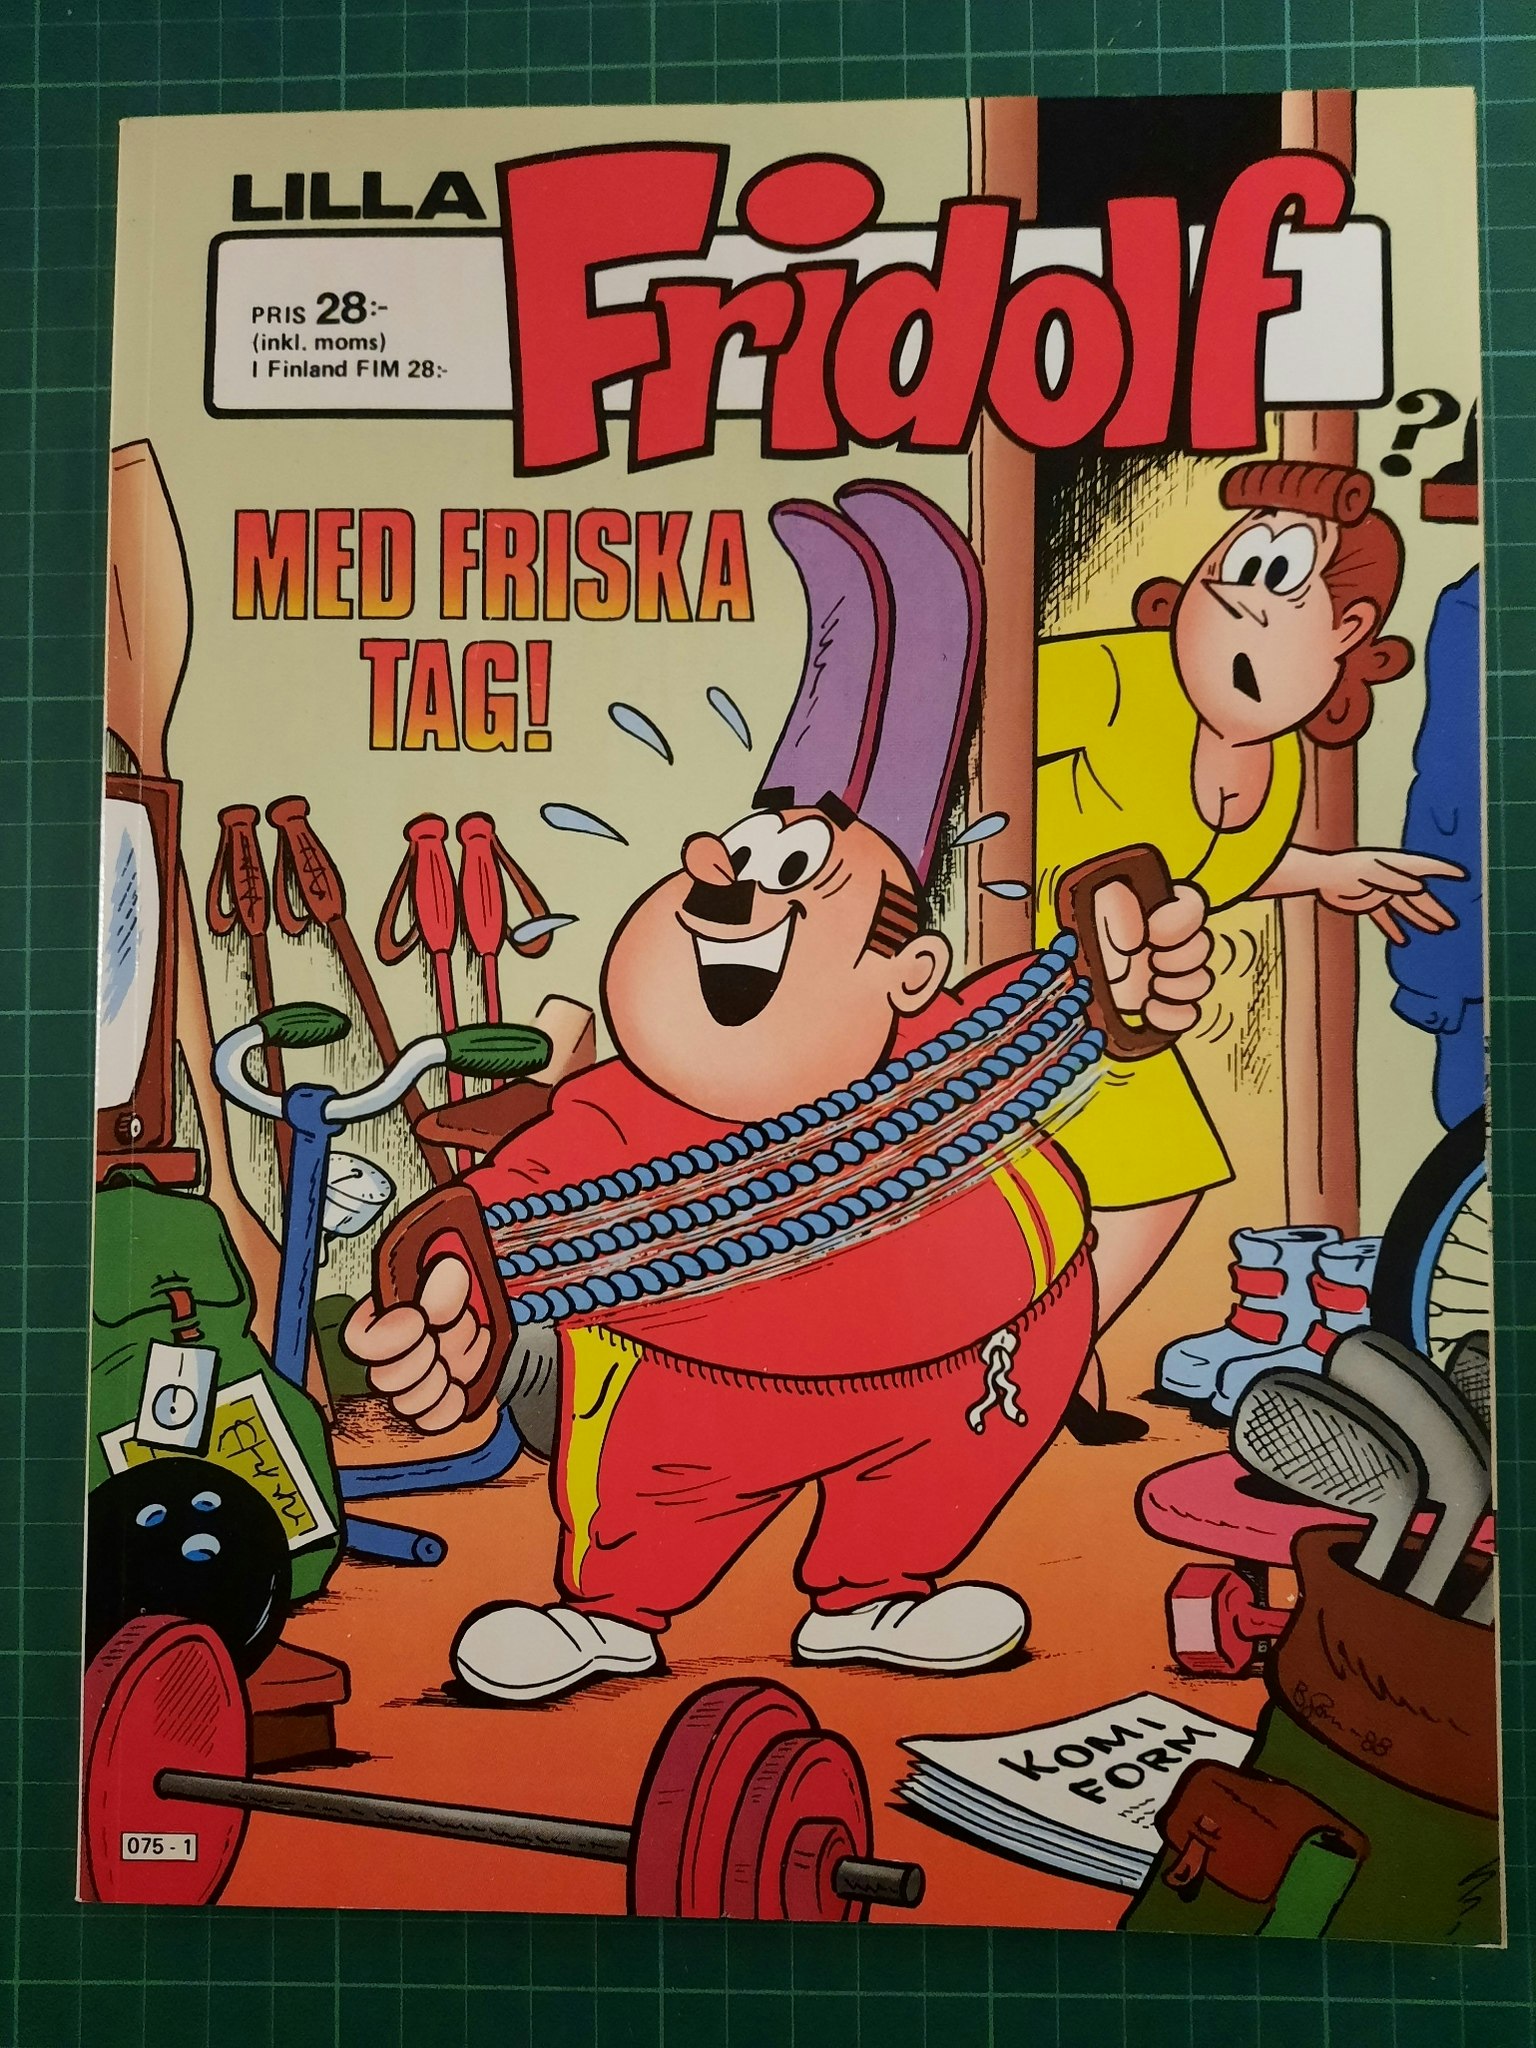 Lilla Fridolf med friska tag (Svensk)